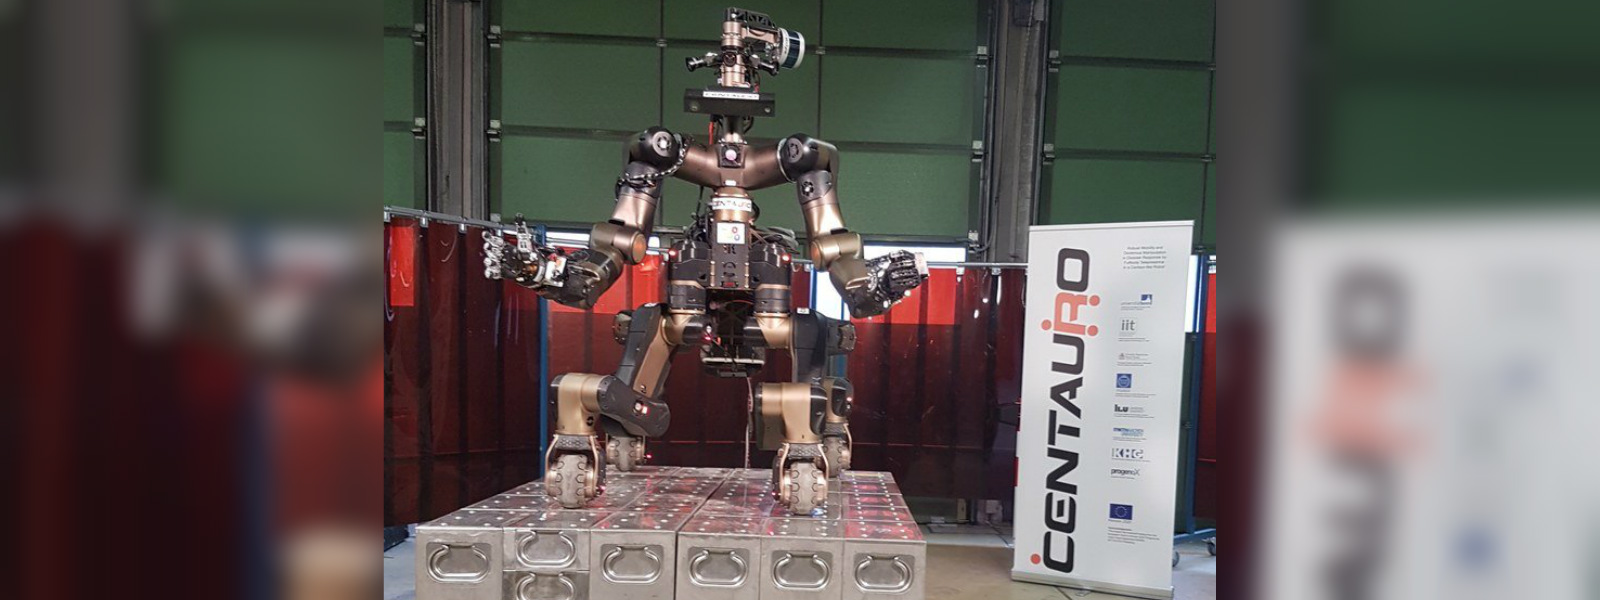 Centaur-like robot designed for disaster response